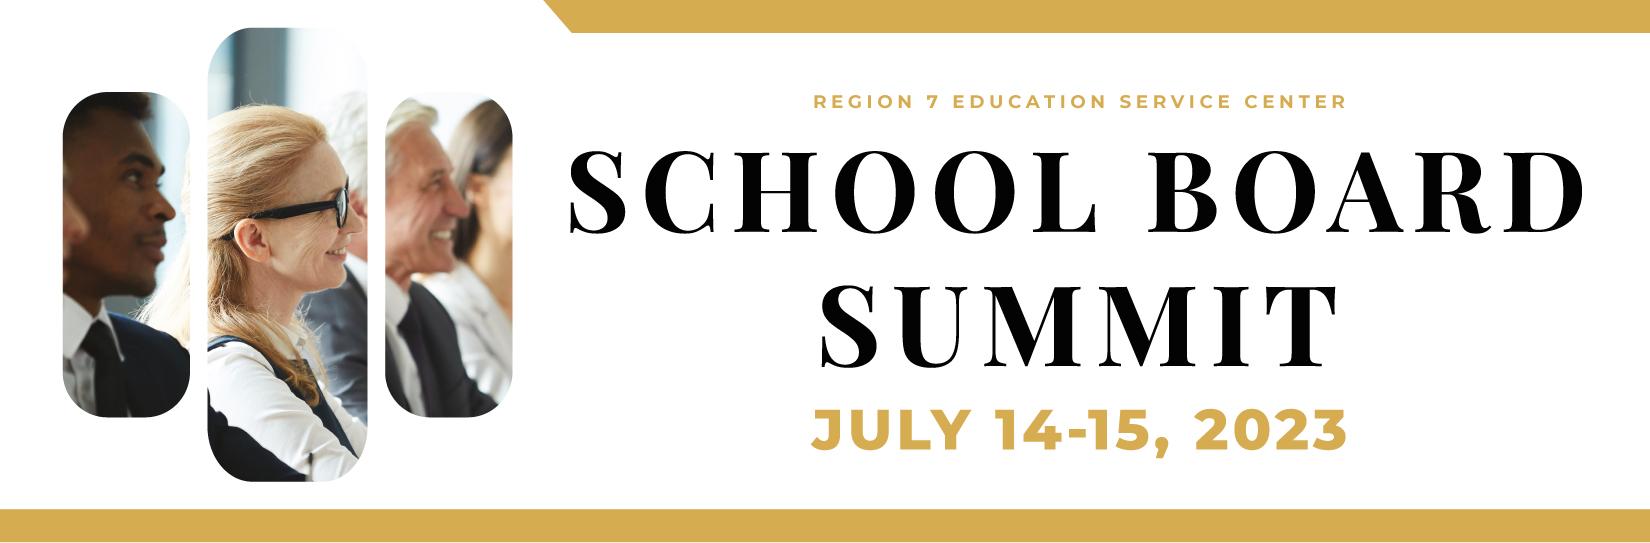 Region 7 ESC School Board Training Summit 2023